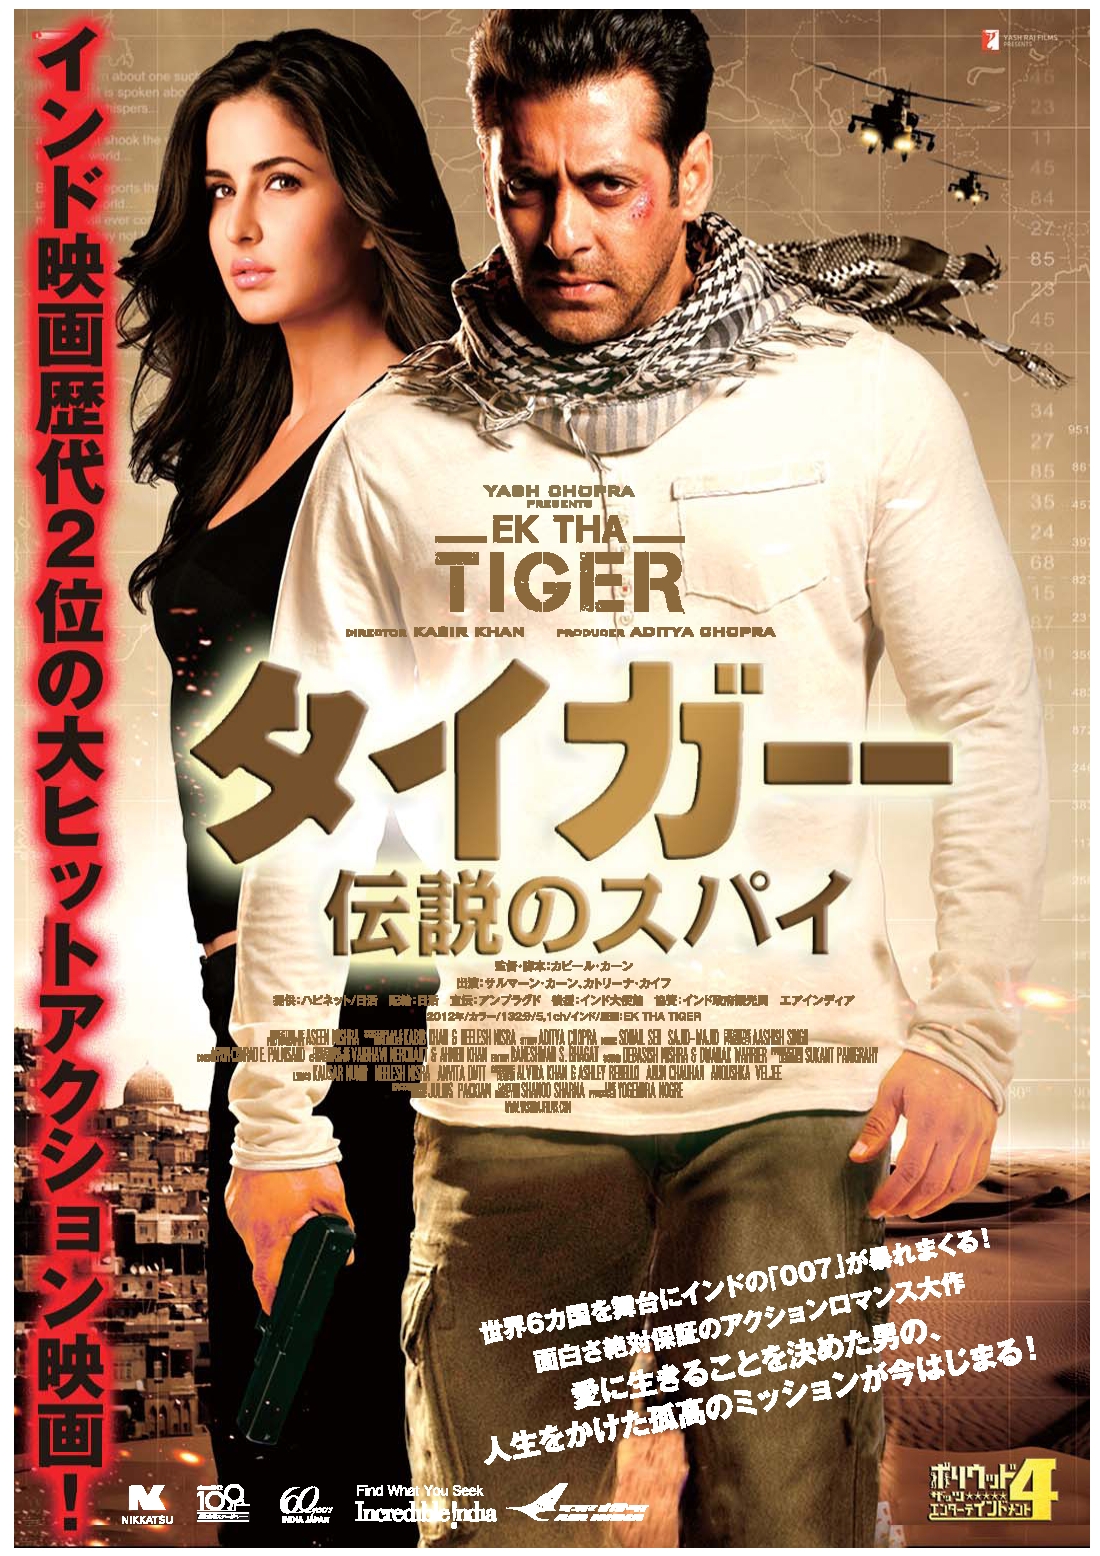 ETT Japan poster